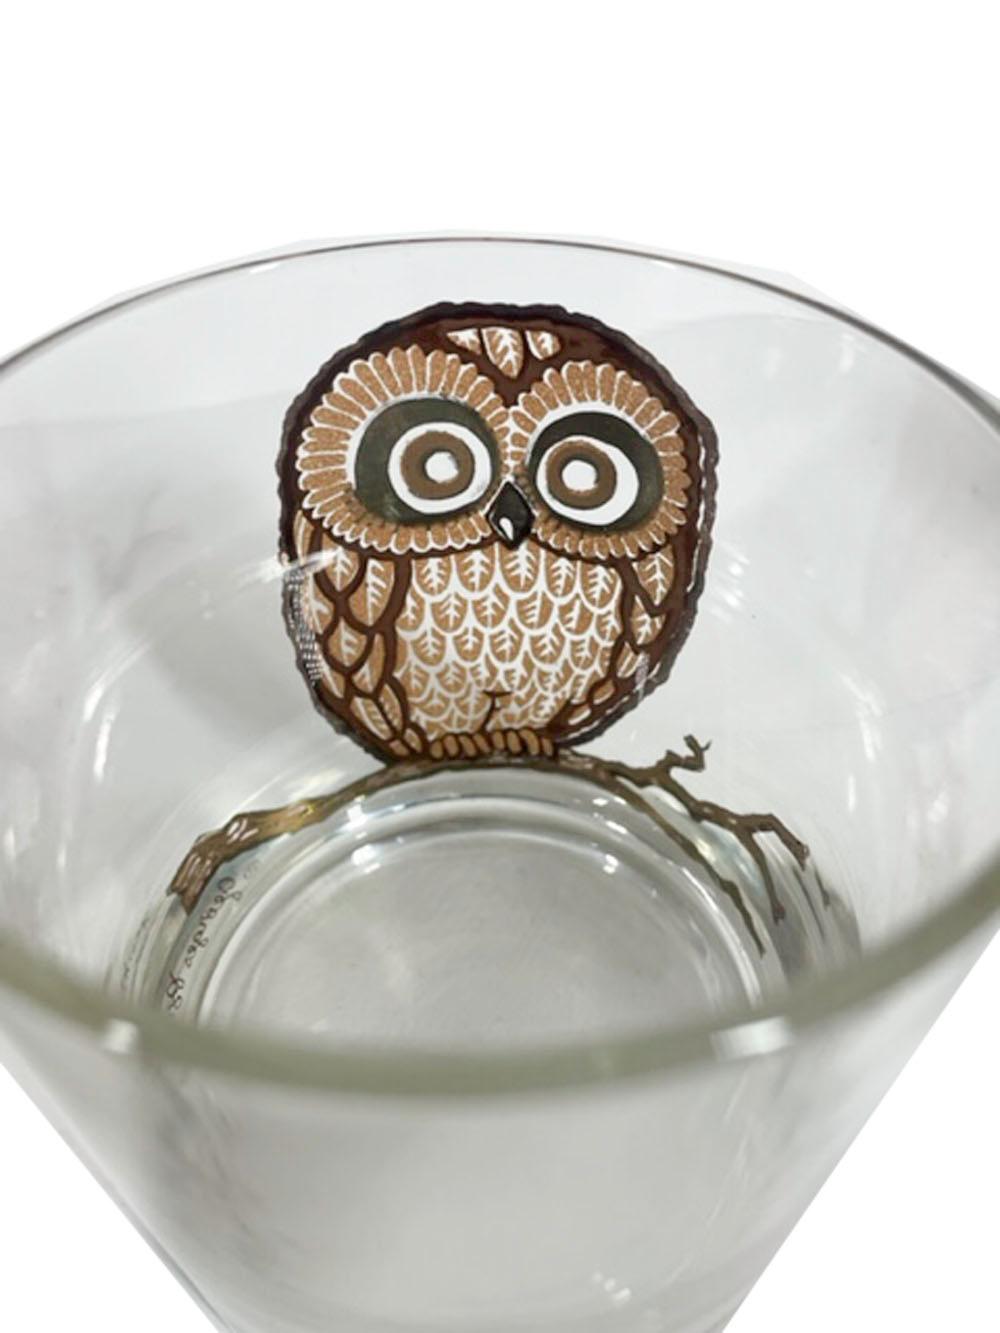 American Vintage Georges Briard Owl Rocks Glasses, Hard to Find